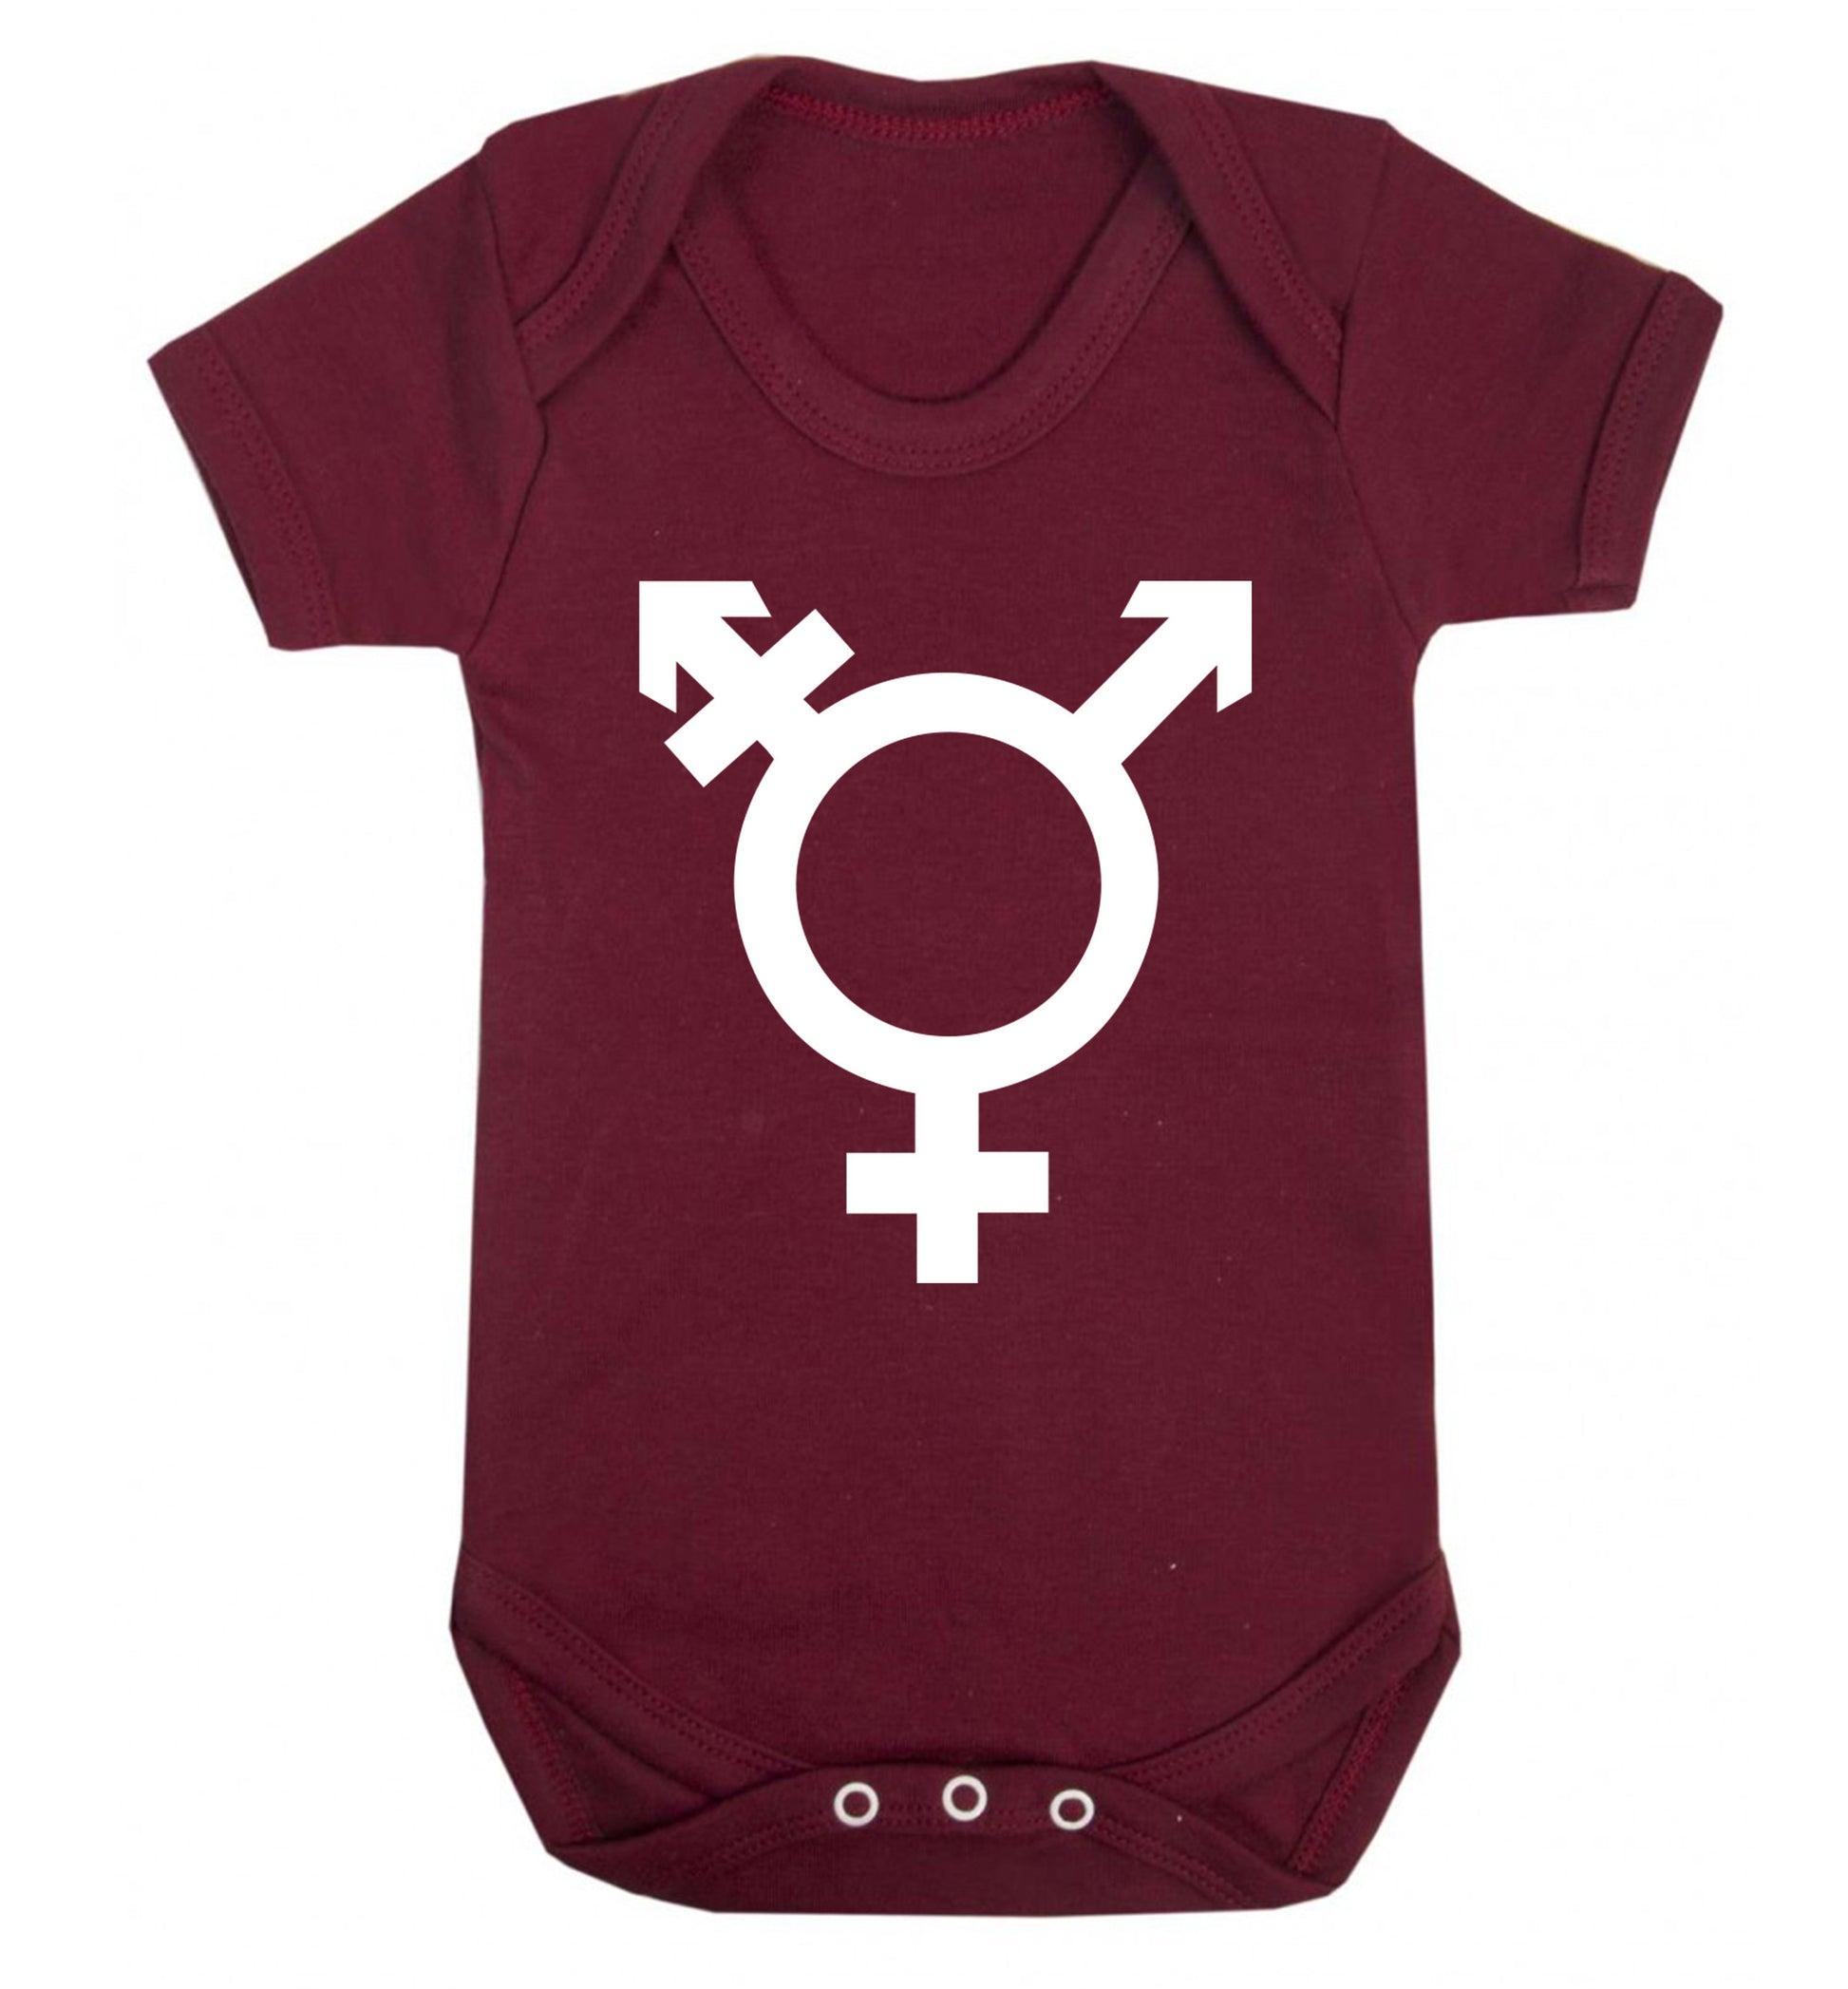 Gender neutral symbol large Baby Vest maroon 18-24 months